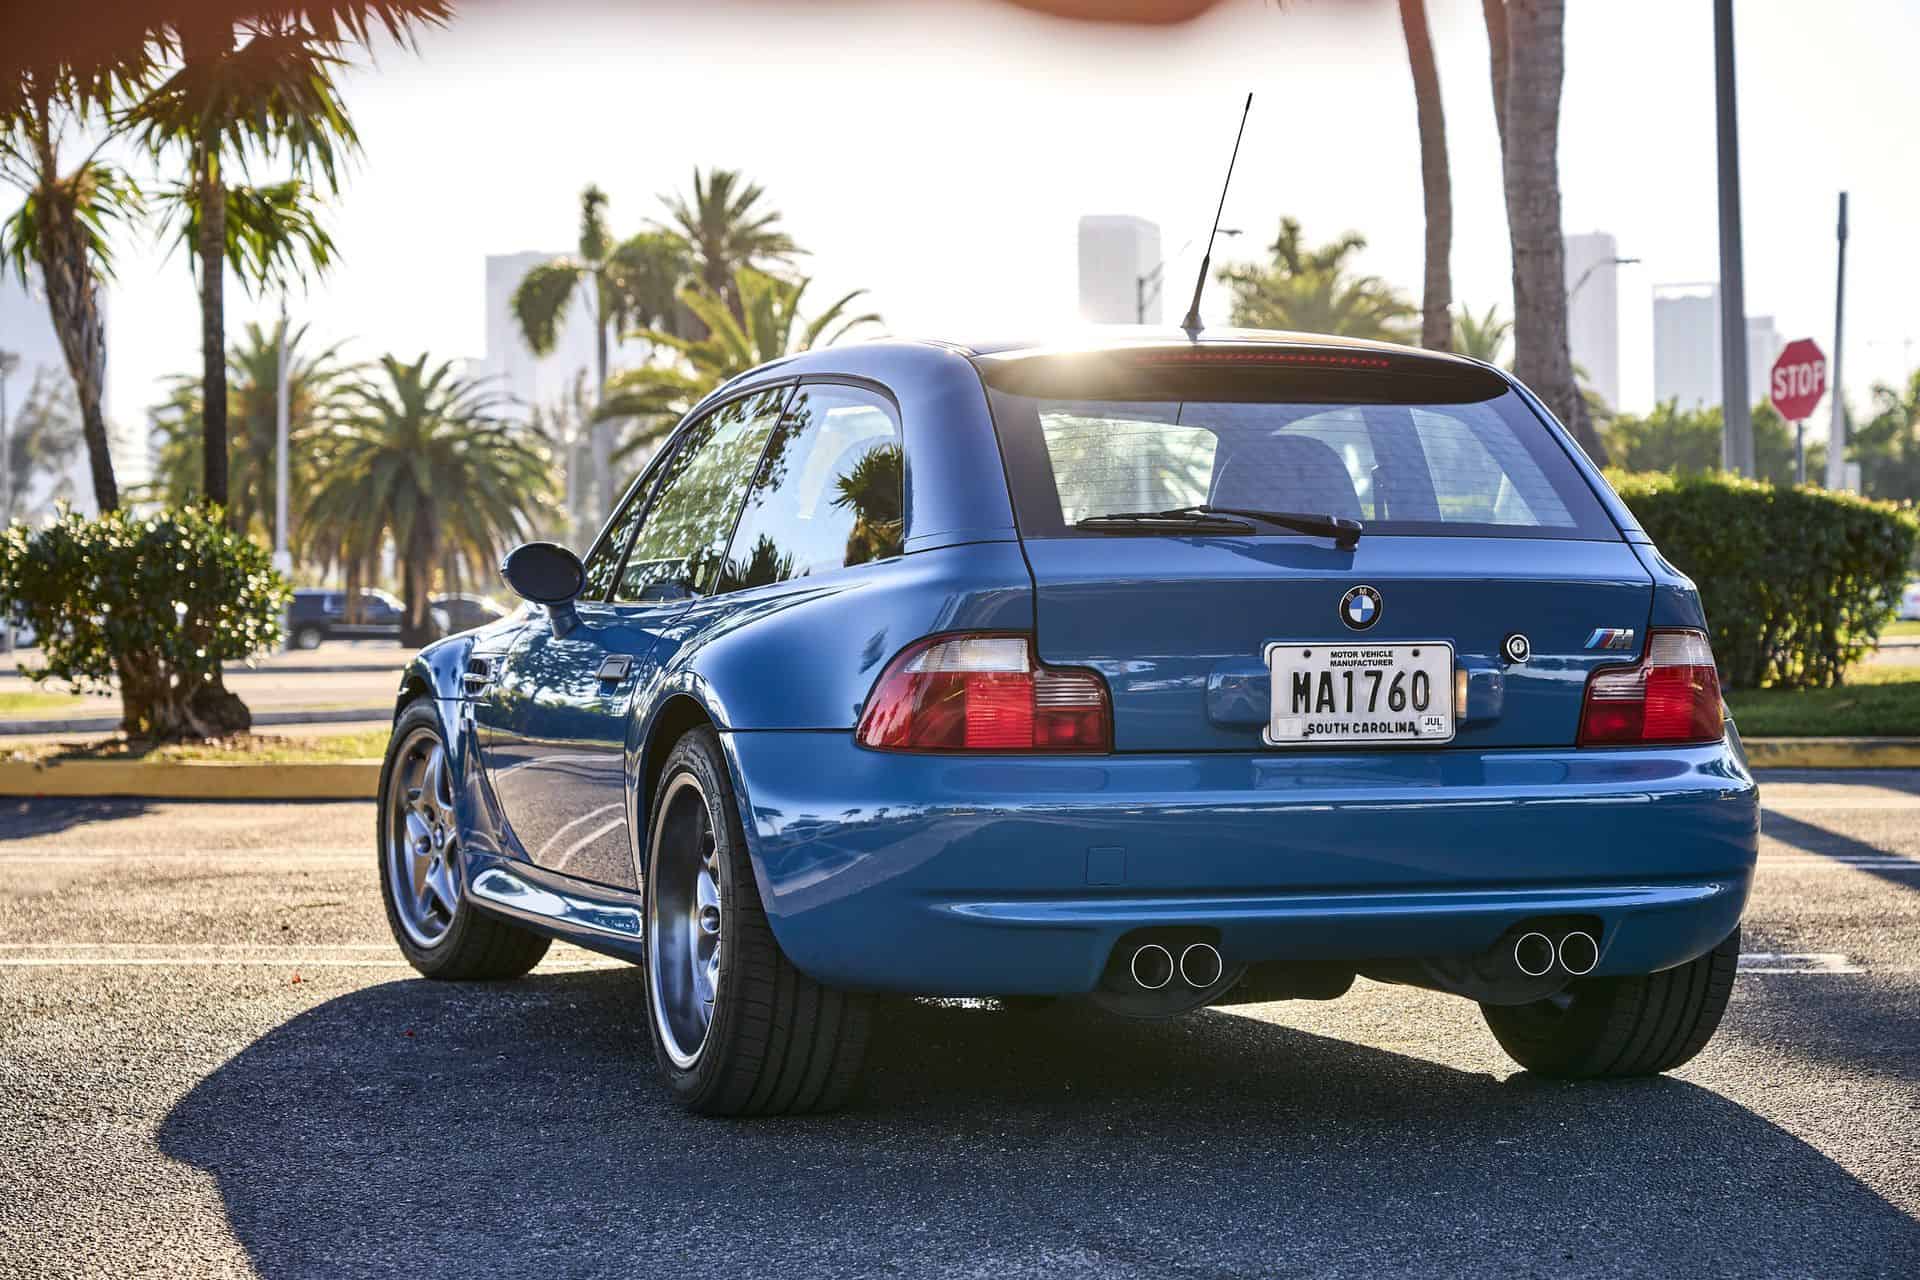 بهترین خودروهای بی ام دبلیو BMW در دهه نود میلادی : بی ام دبلیو E36/8 Z3 M-Coupe